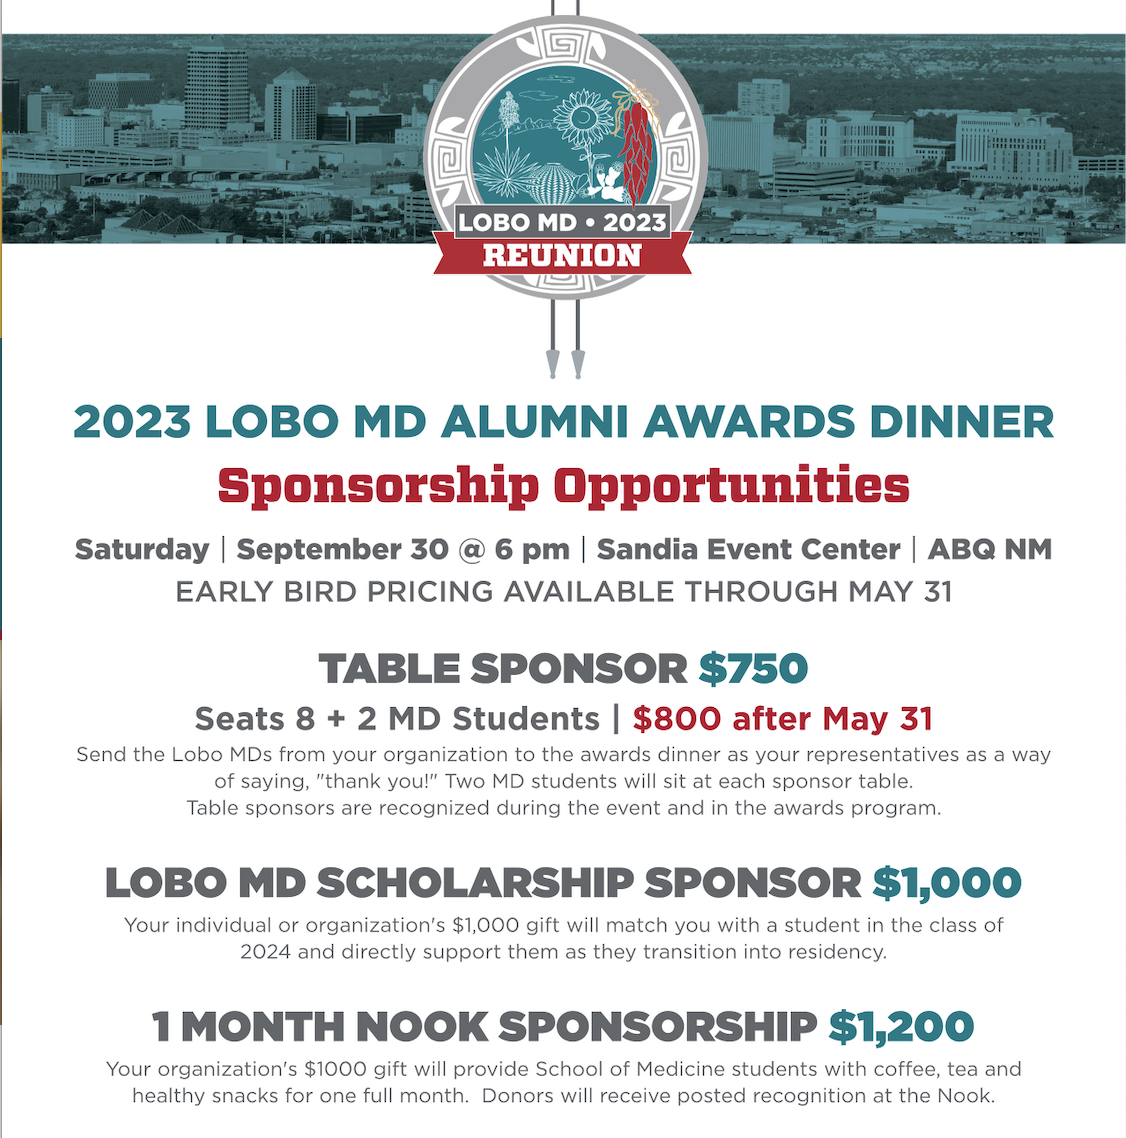 Opportunità di sponsorizzazione per la Lobo MD Reunion del 2023